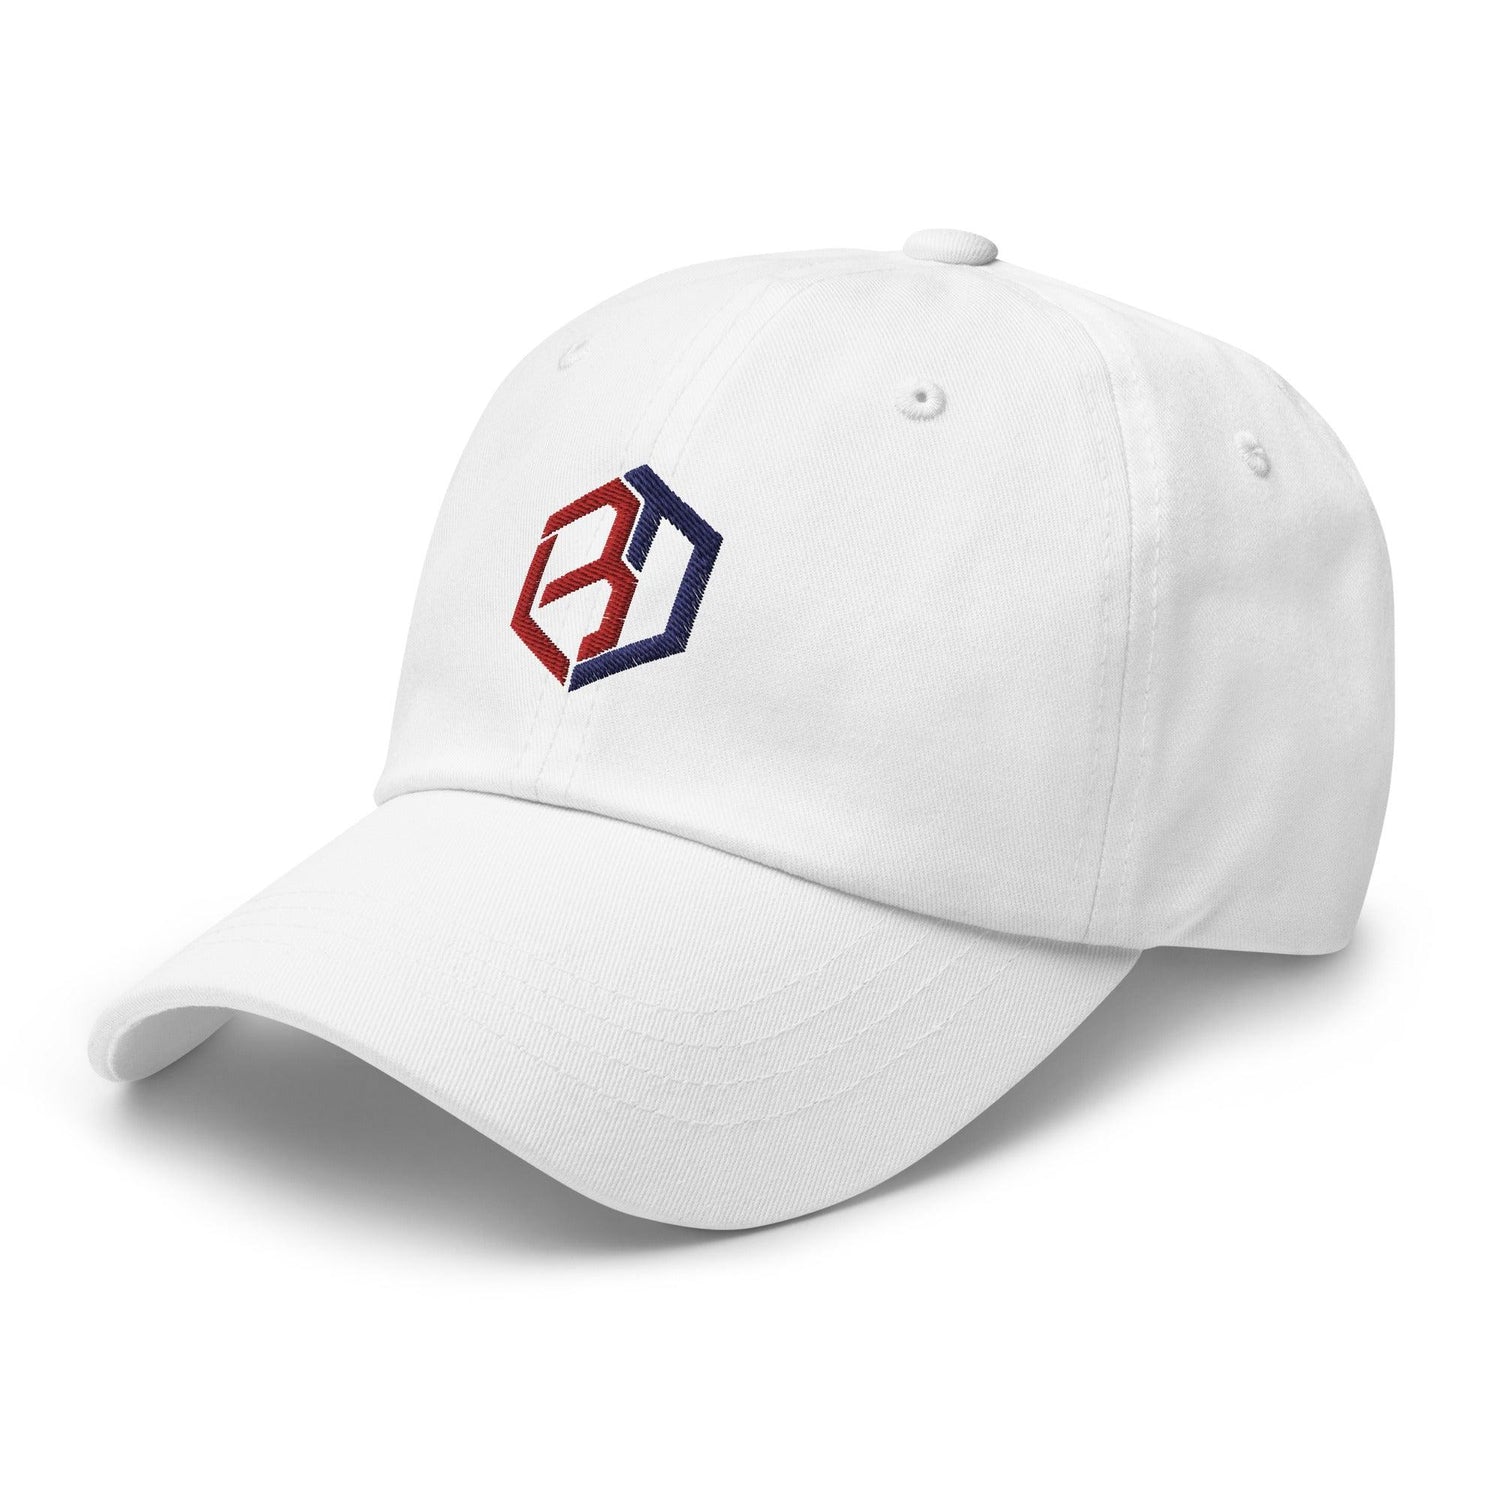 Bryan Dobzanski "Elite" hat - Fan Arch